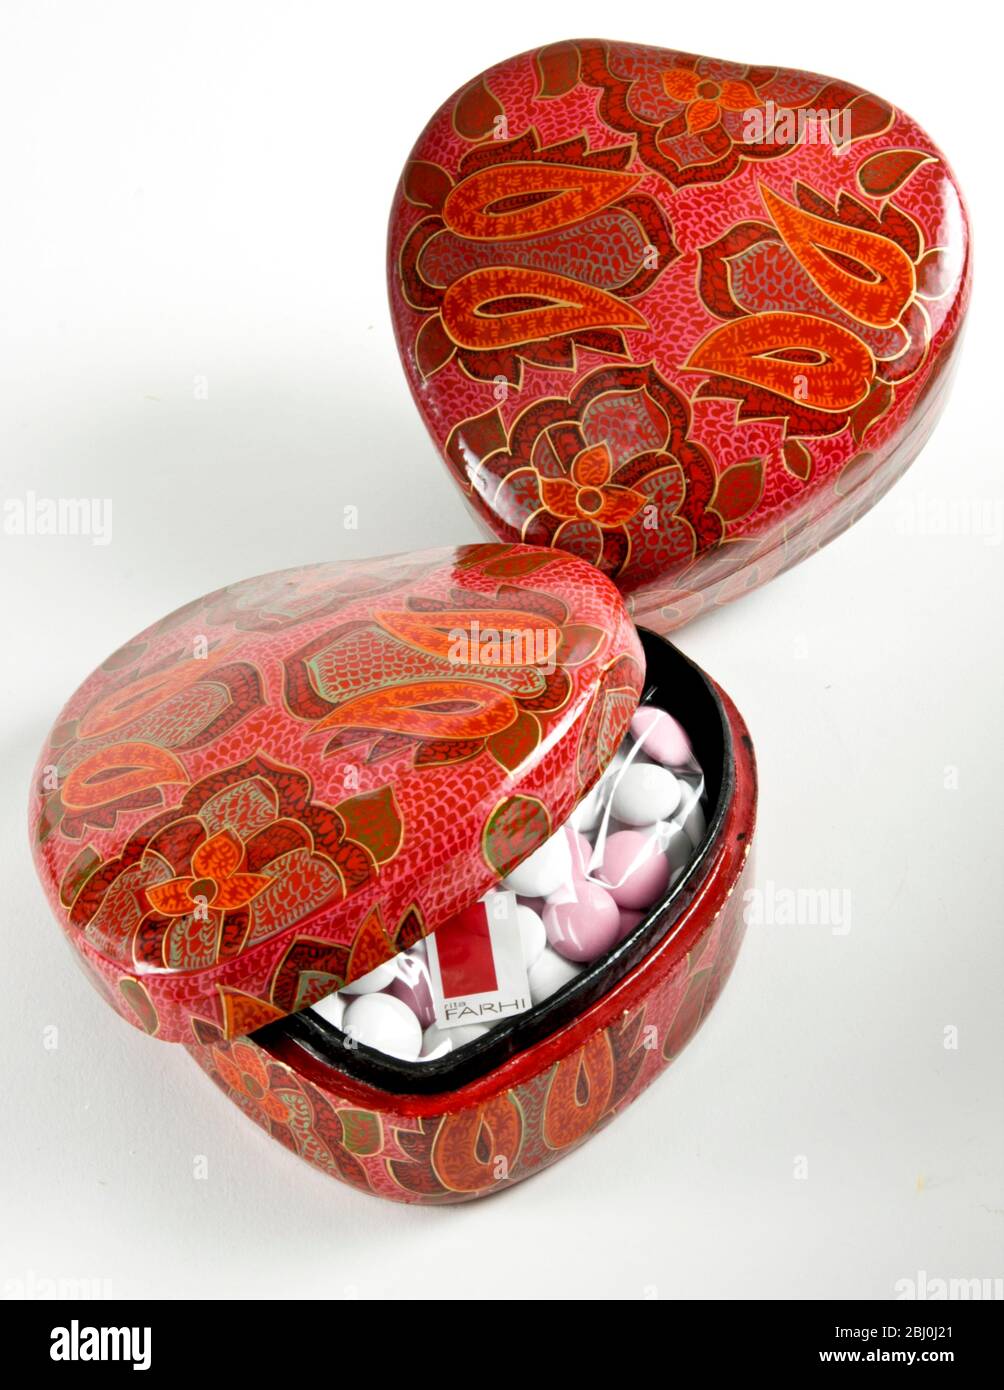 Herzförmige Pappmaché-Boxen gefüllt mit gezuckerten Mandeln - ein Geschenk zum Valentinstag - Stockfoto